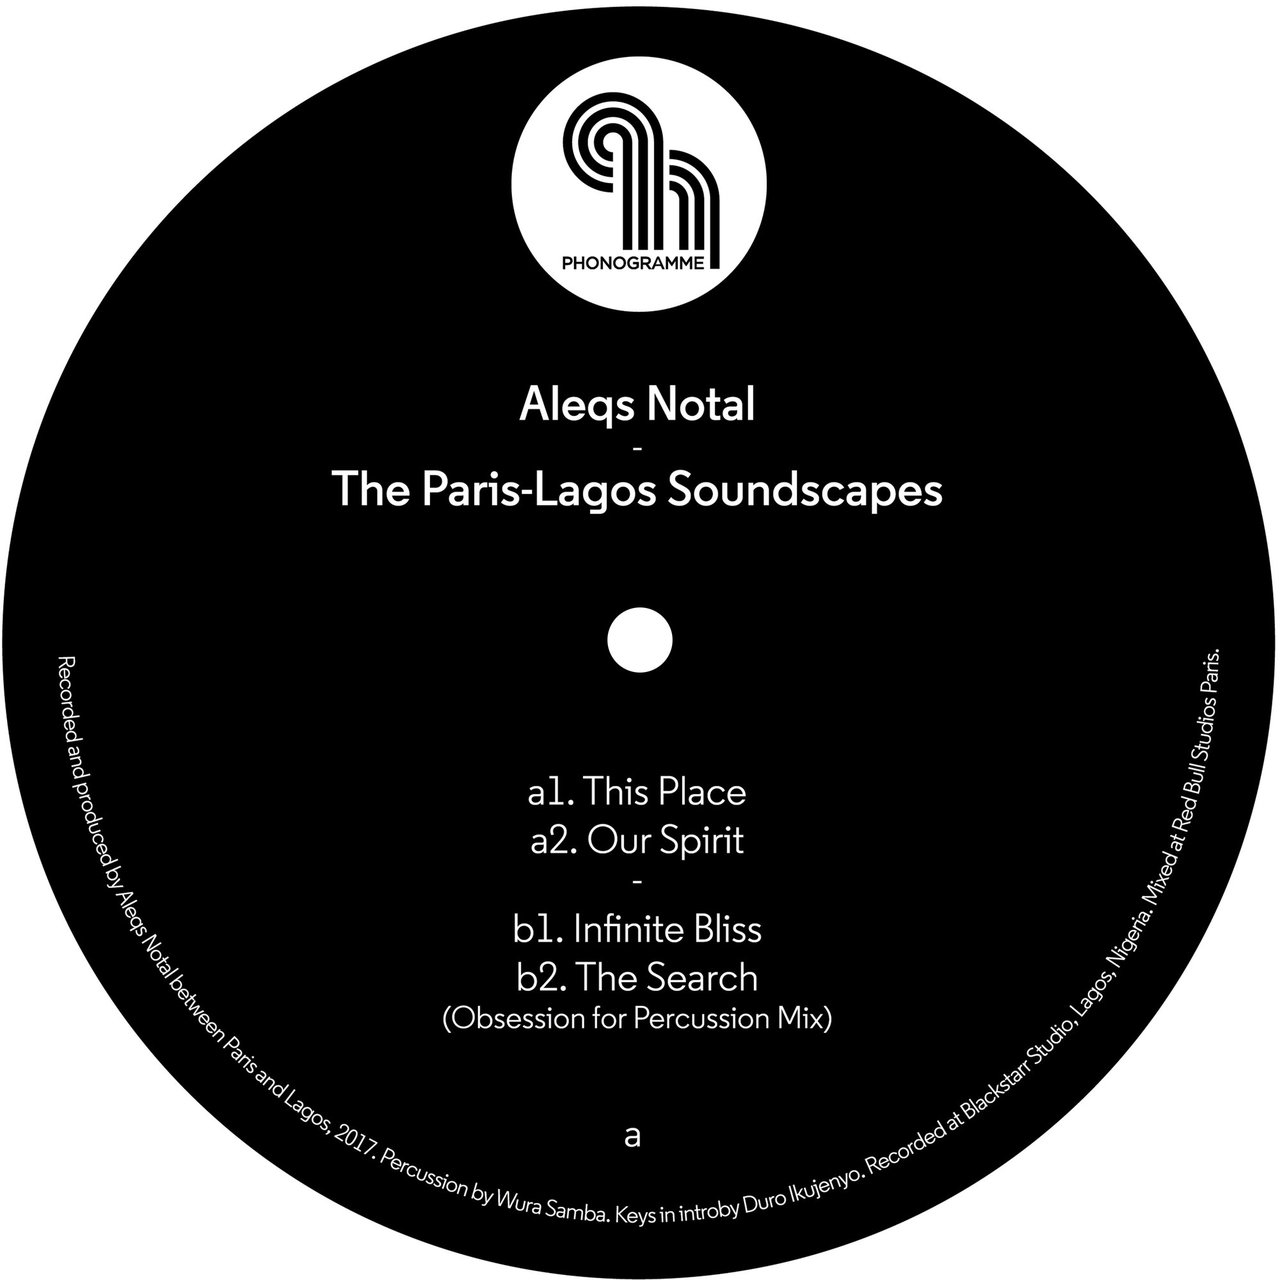 Aleqs Notal - The Paris-Lagos Soundscapes / Phonogramme